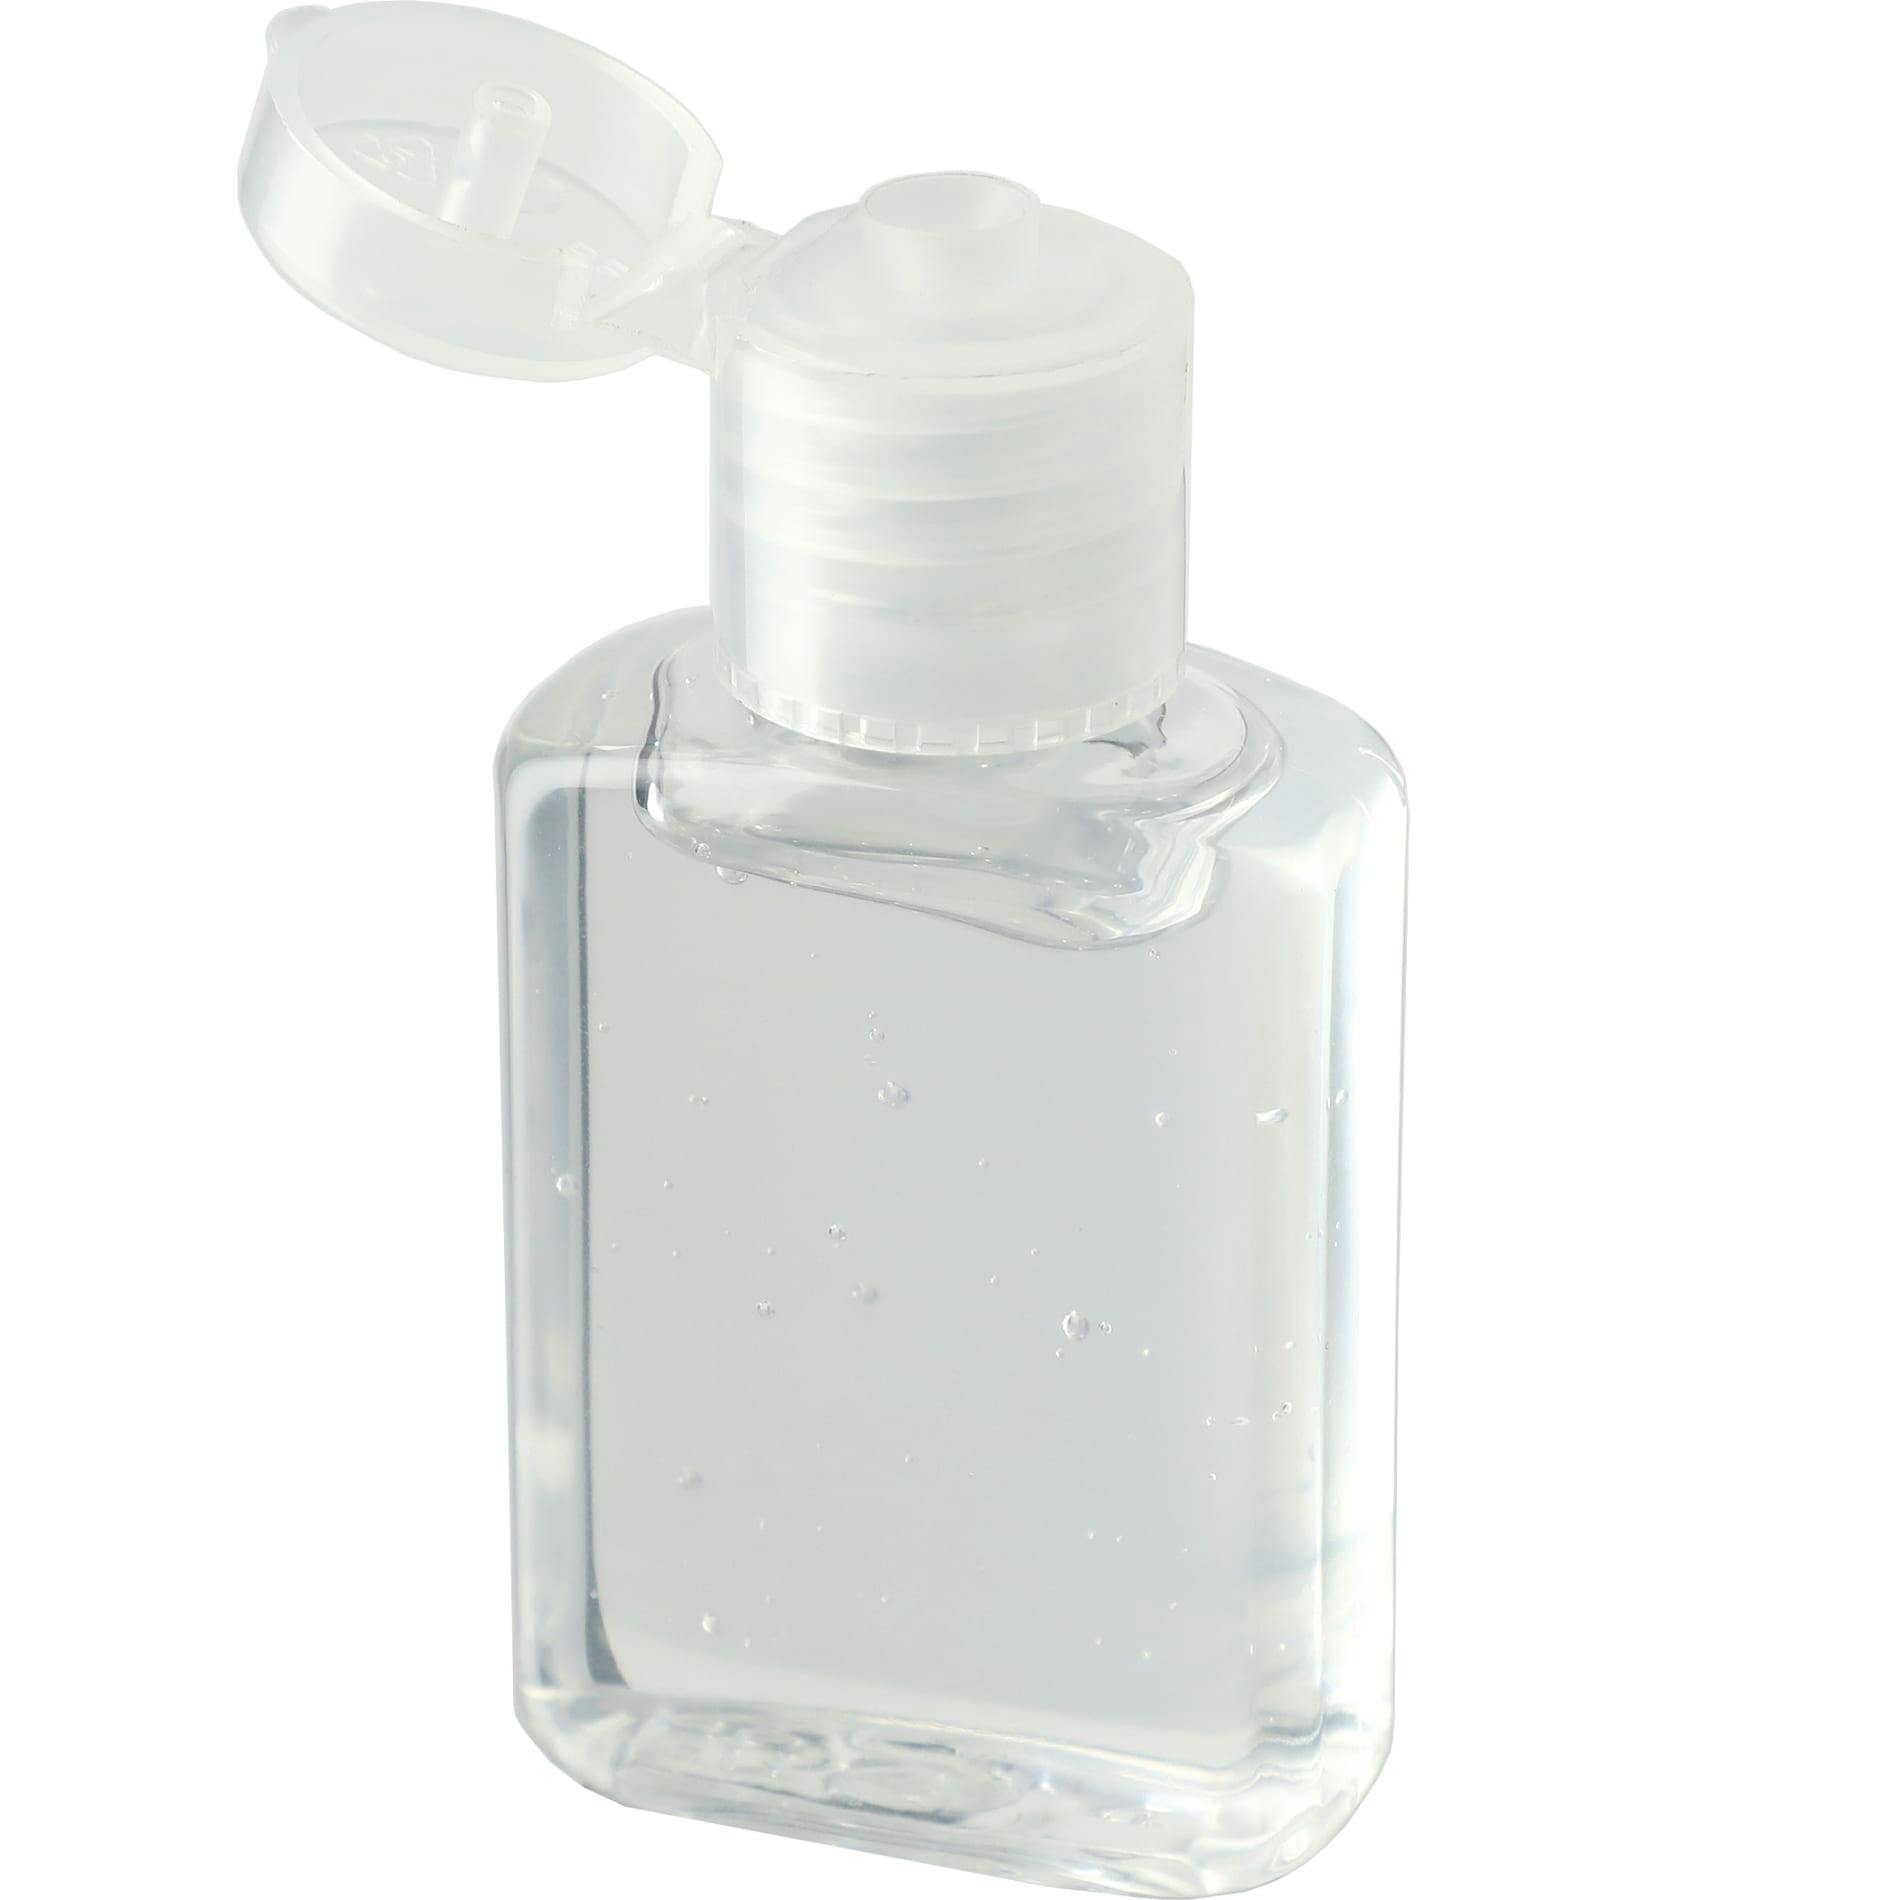 0.5oz Gel Hand Sanitizer - additional Image 2